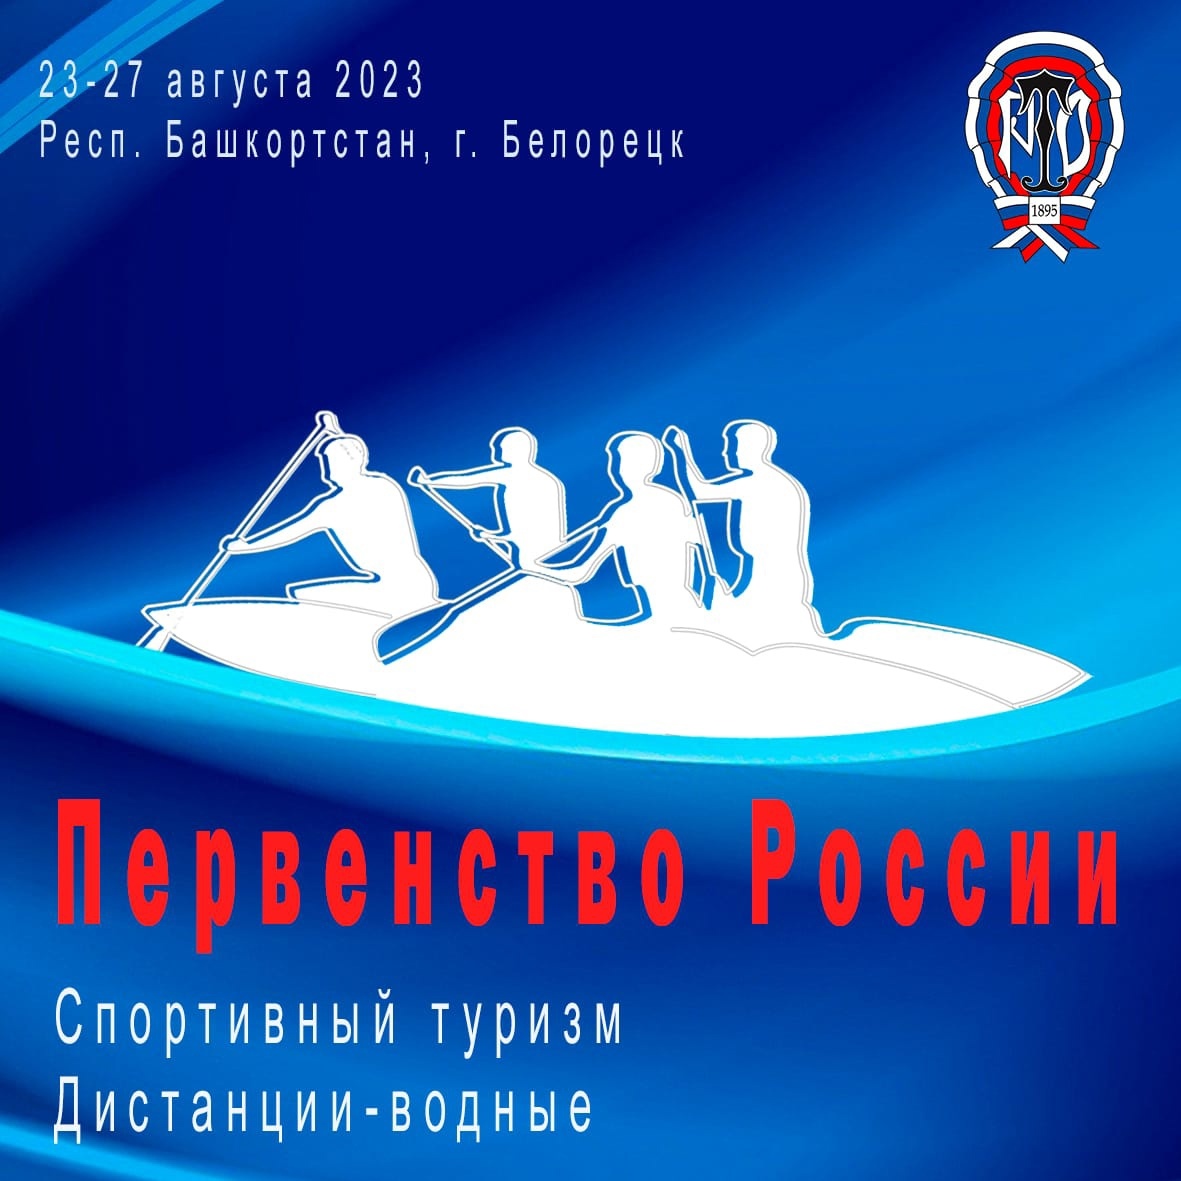 Встречаем первенство России по спортивному туризму на водных дистанциях